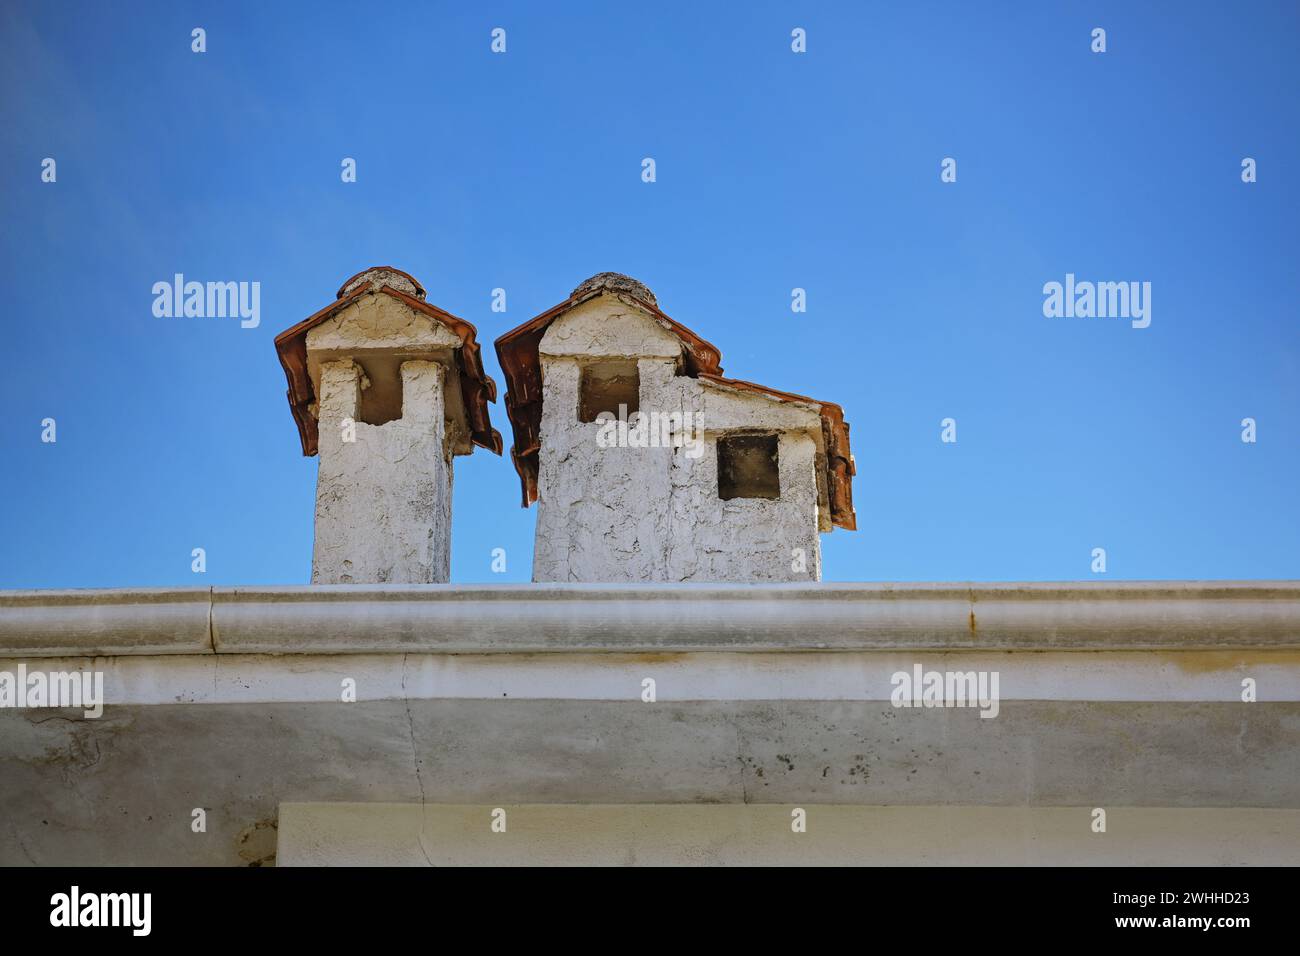 Cheminées plâtrées légères avec des toits en tuiles sur un bâtiment en Grèce, ressemblant à de petites maisons, ciel bleu avec espace de copie, selecte Banque D'Images